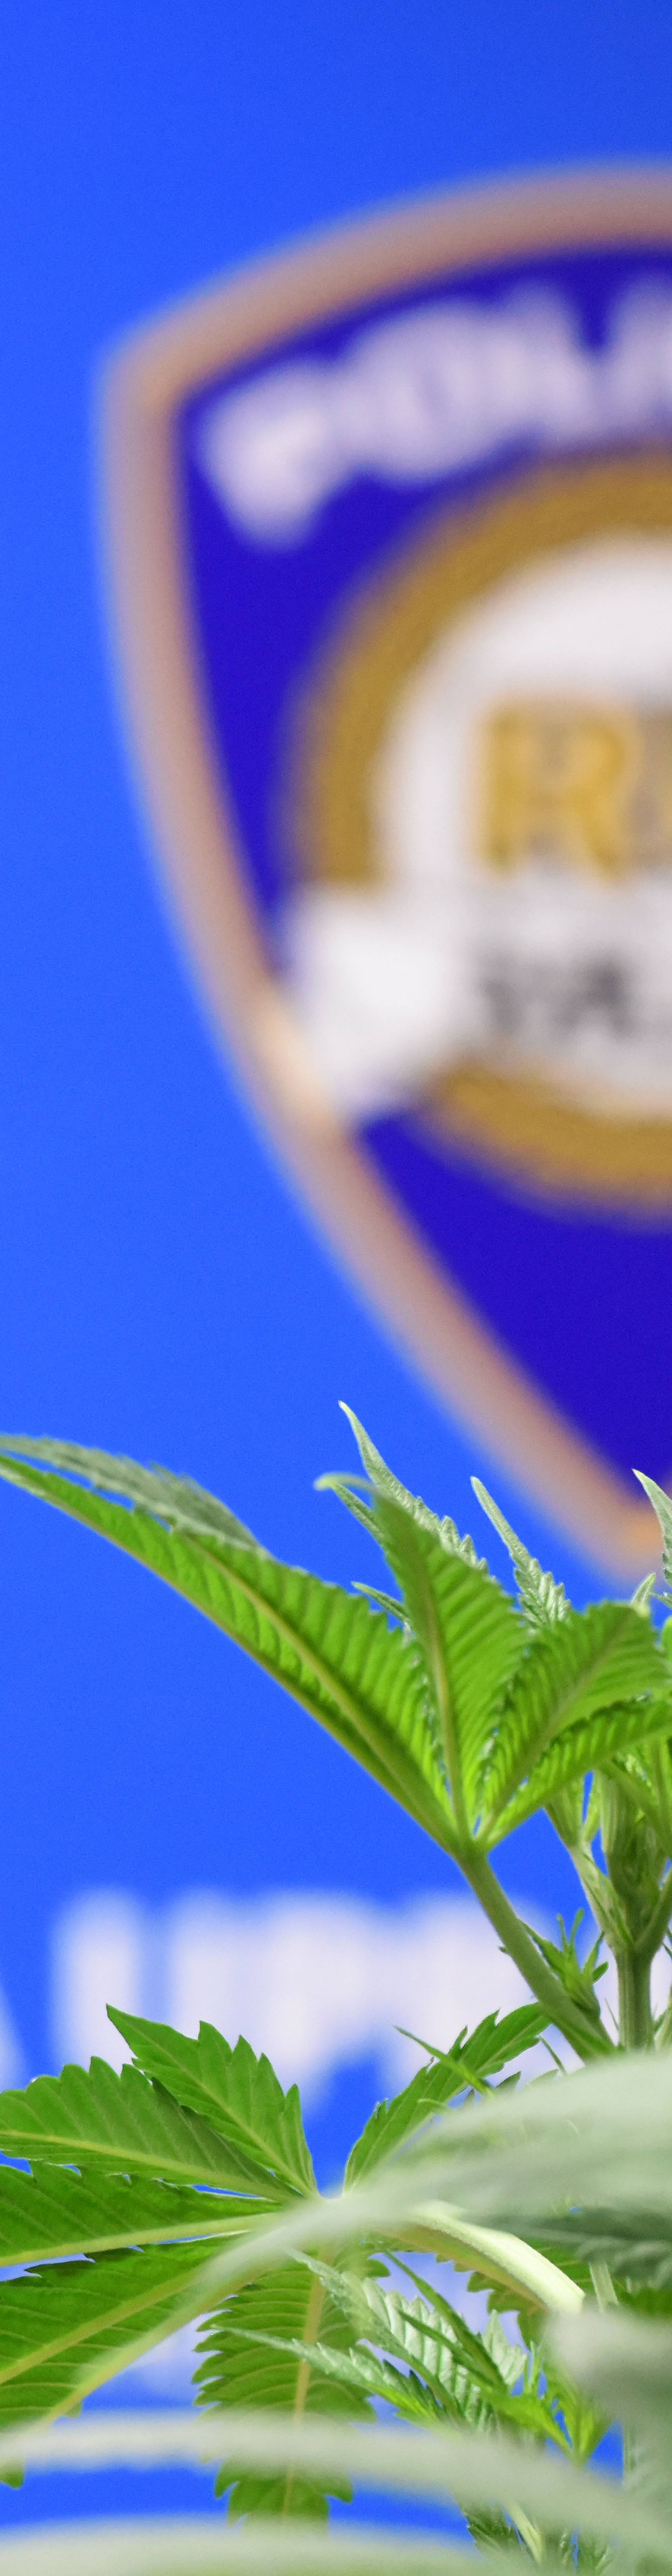 Međimurski policajci otkrili su laboratorij za uzgoj marihuane